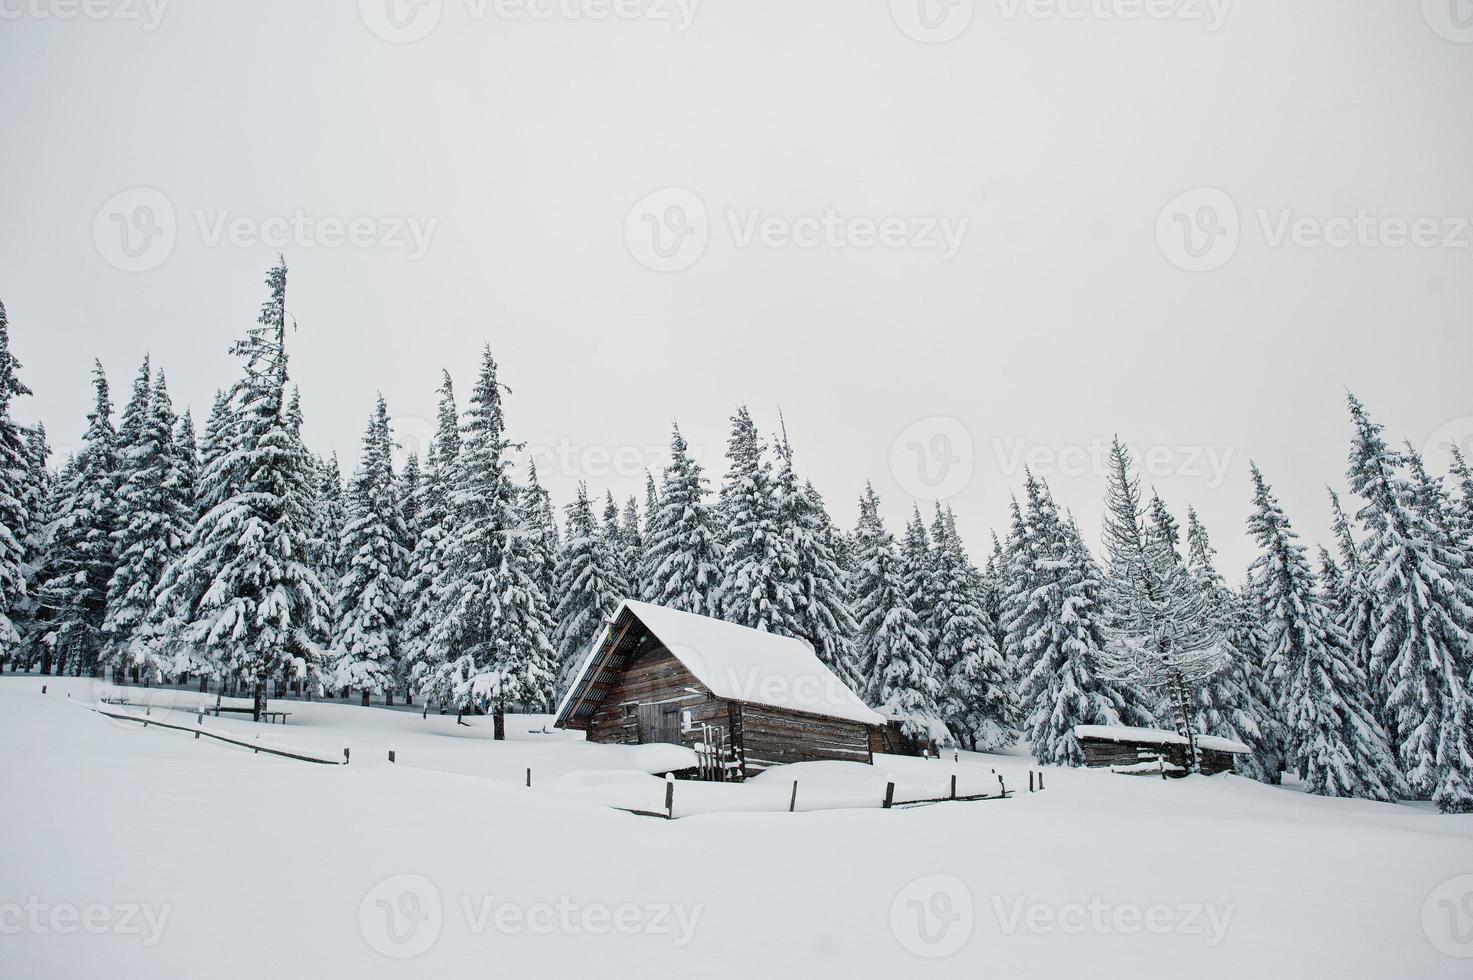 casa de madeira em pinheiros cobertos de neve na montanha chomiak. belas paisagens de inverno das montanhas dos cárpatos, ucrânia. natureza geada. foto